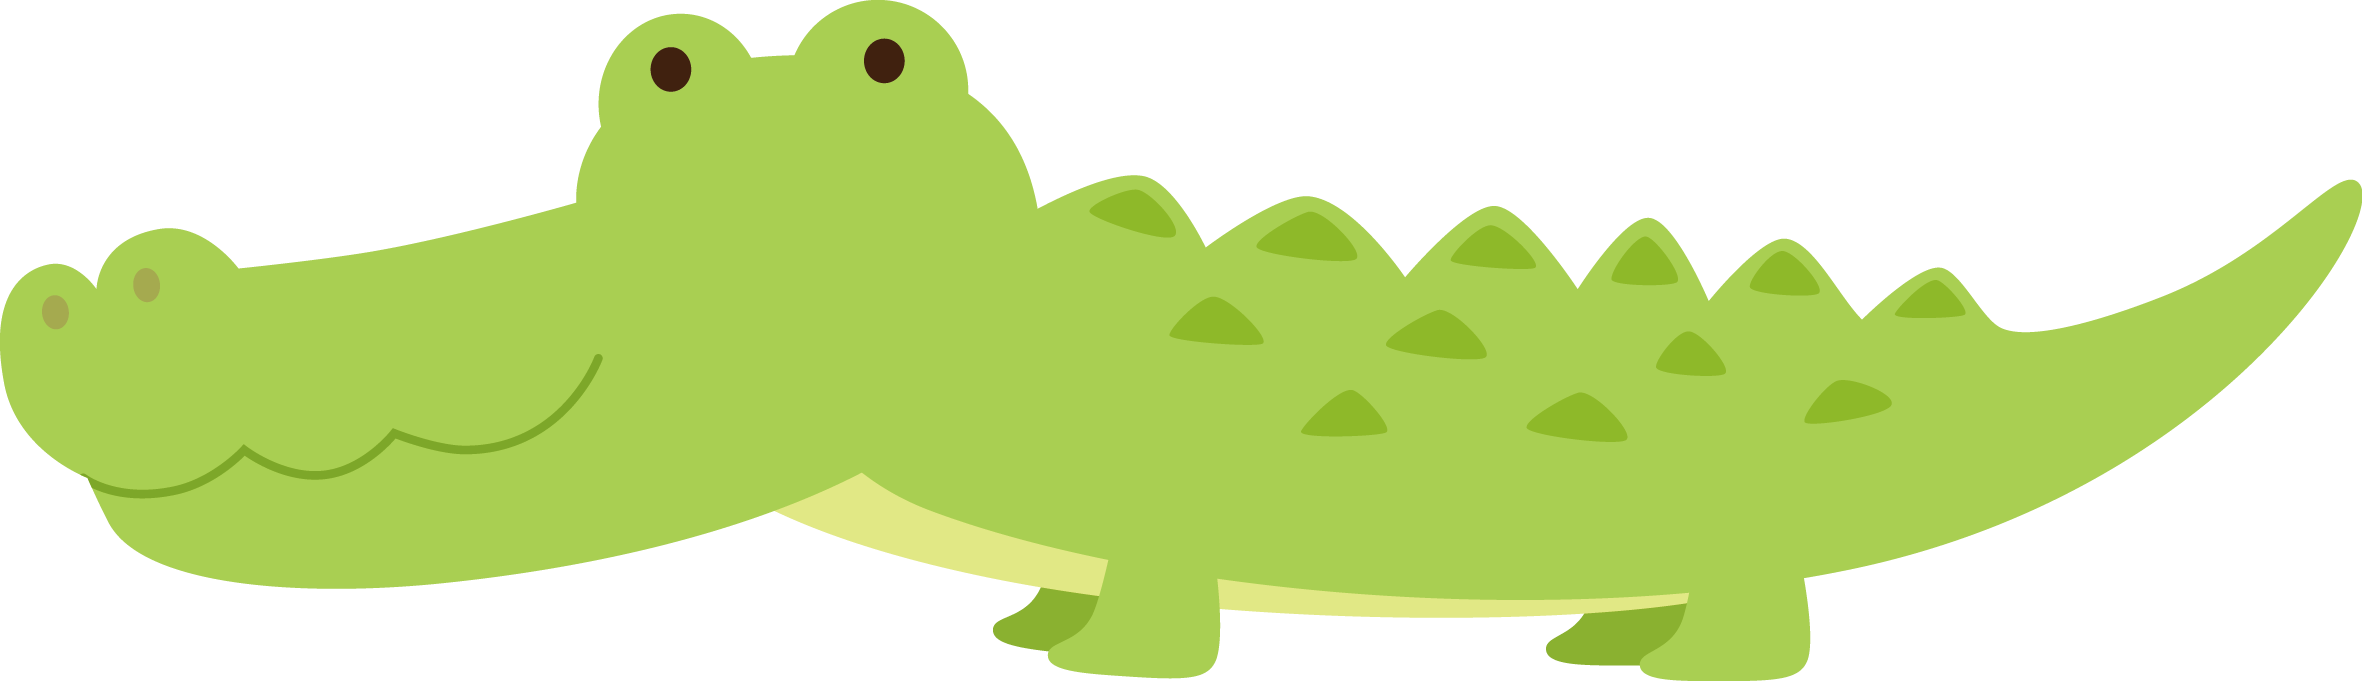 Crocodiles Cartoon Drawing - Crocodile (2362x681)